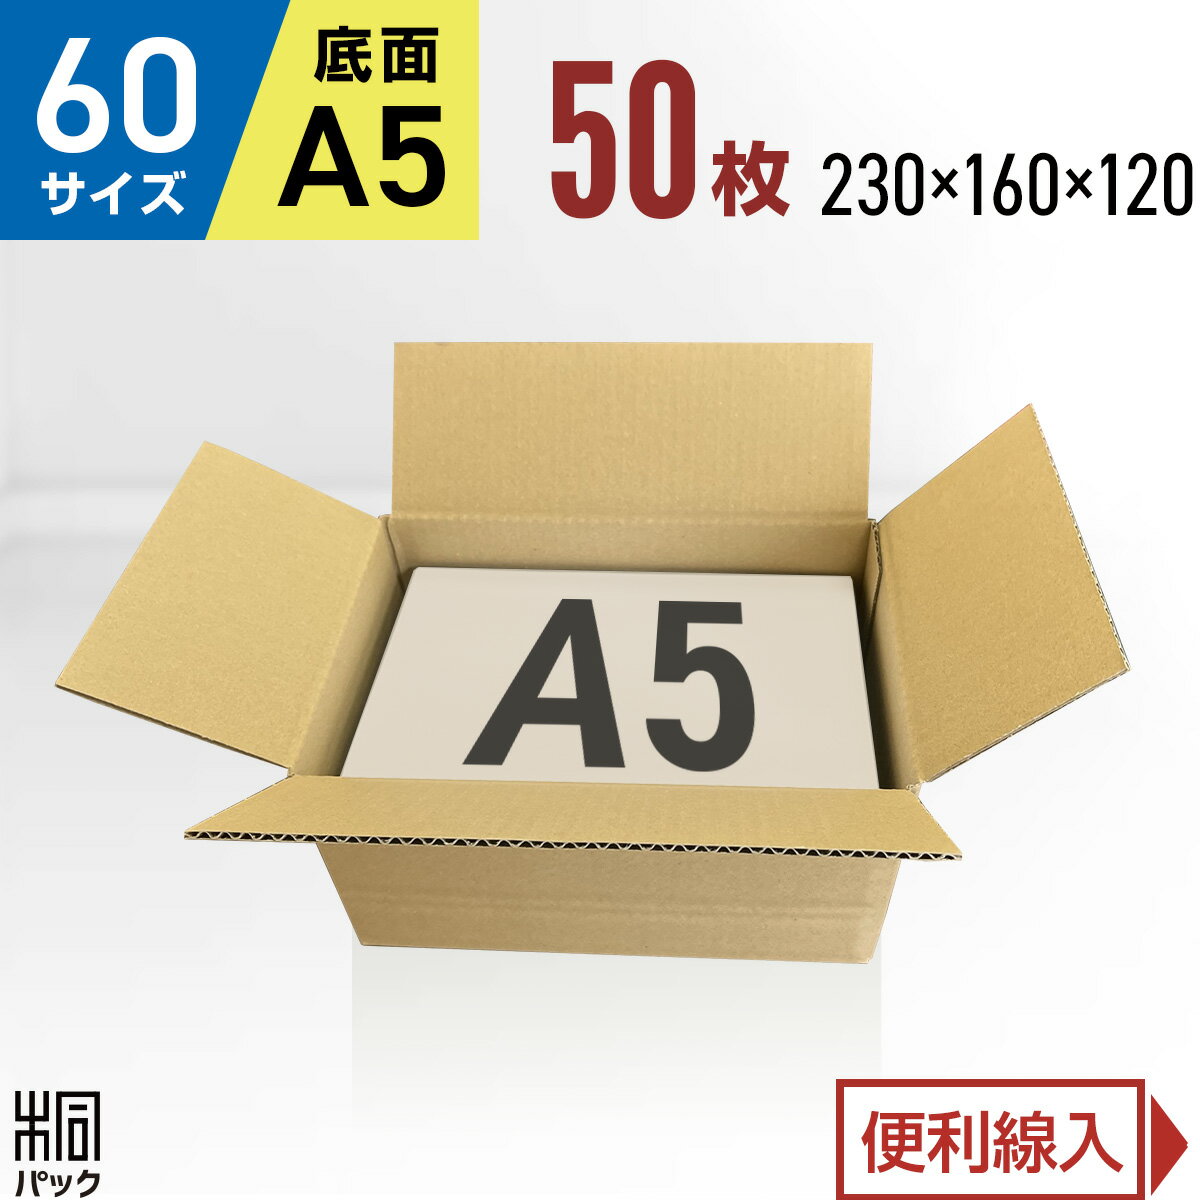 カリラ 段ボール 箱 60サイズ A5 50枚 (3mm厚 230x160x120) 段ボール 60 A5 宅配 梱包 通販 資材 用 セット 日本